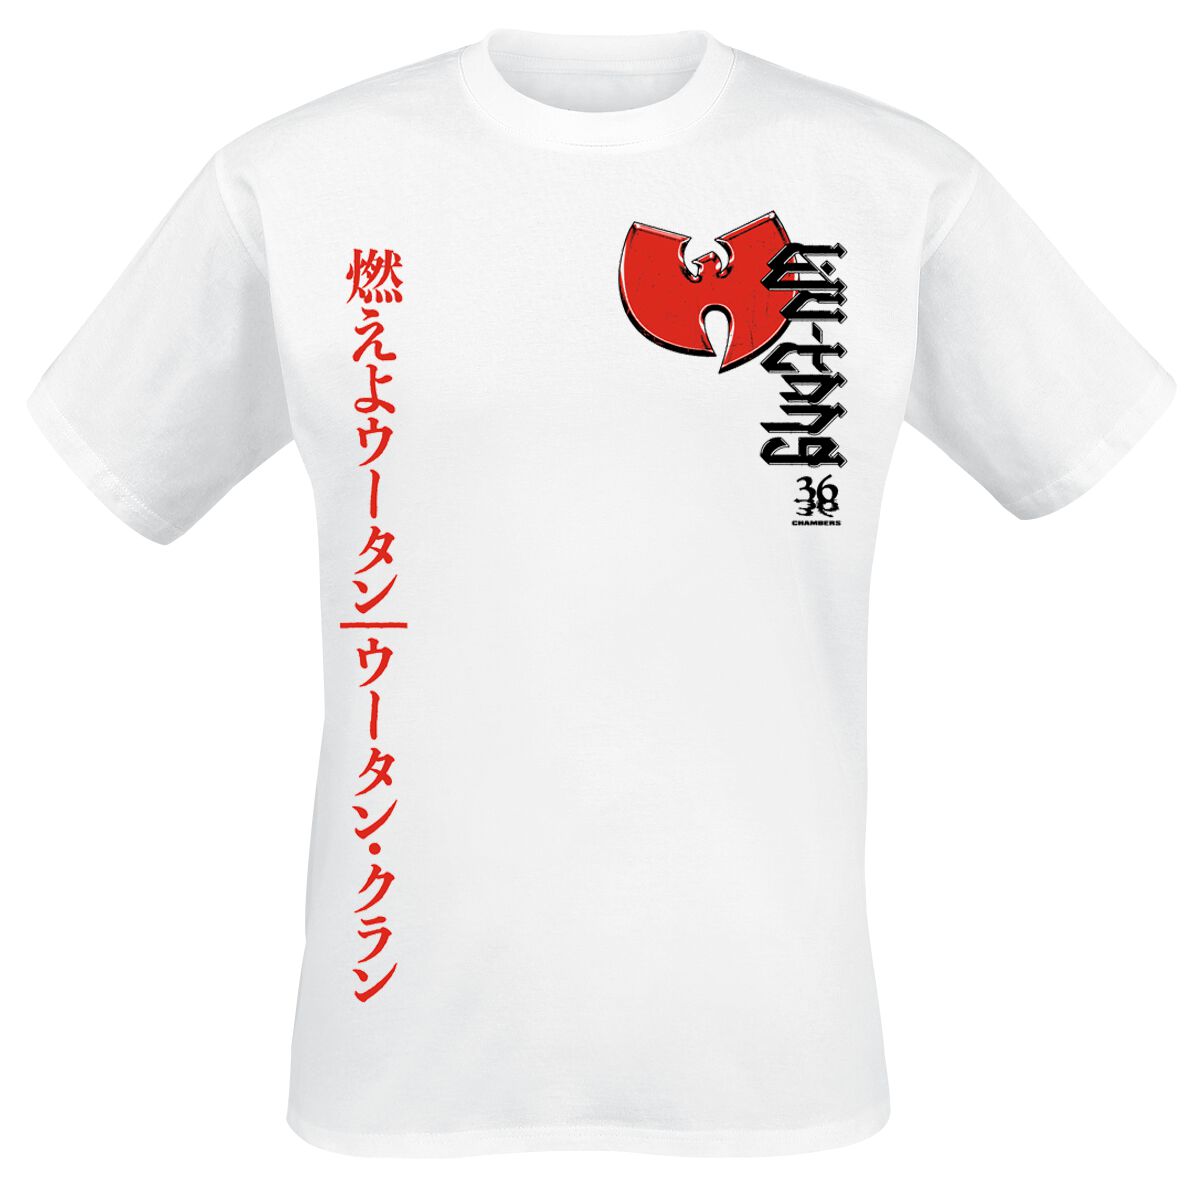 Wu-Tang Clan T-Shirt - Swords - S bis XXL - für Männer - Größe L - weiß  - Lizenziertes Merchandise!